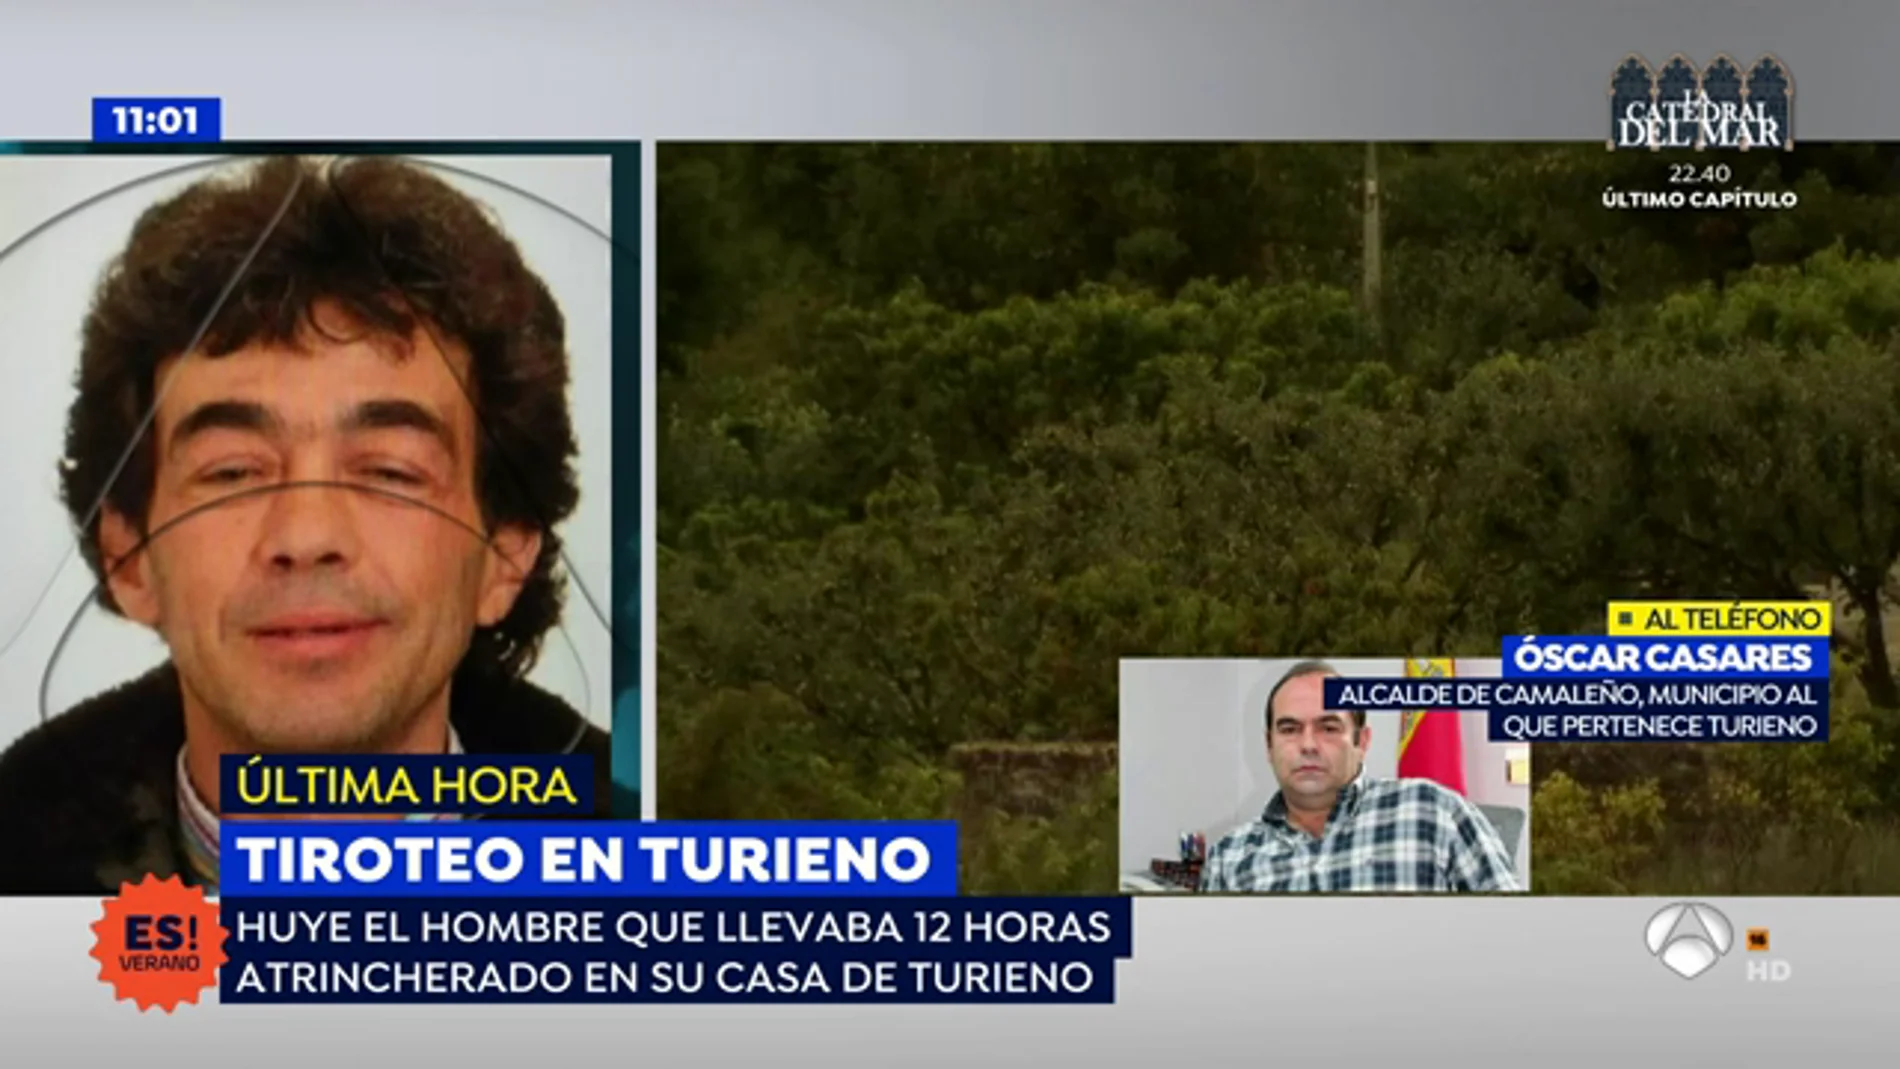 El alcalde de Turieno, sobre el fugitivo que estuvo atrincherado: "Esperemos que no se tope con nadie y líe una gorda"